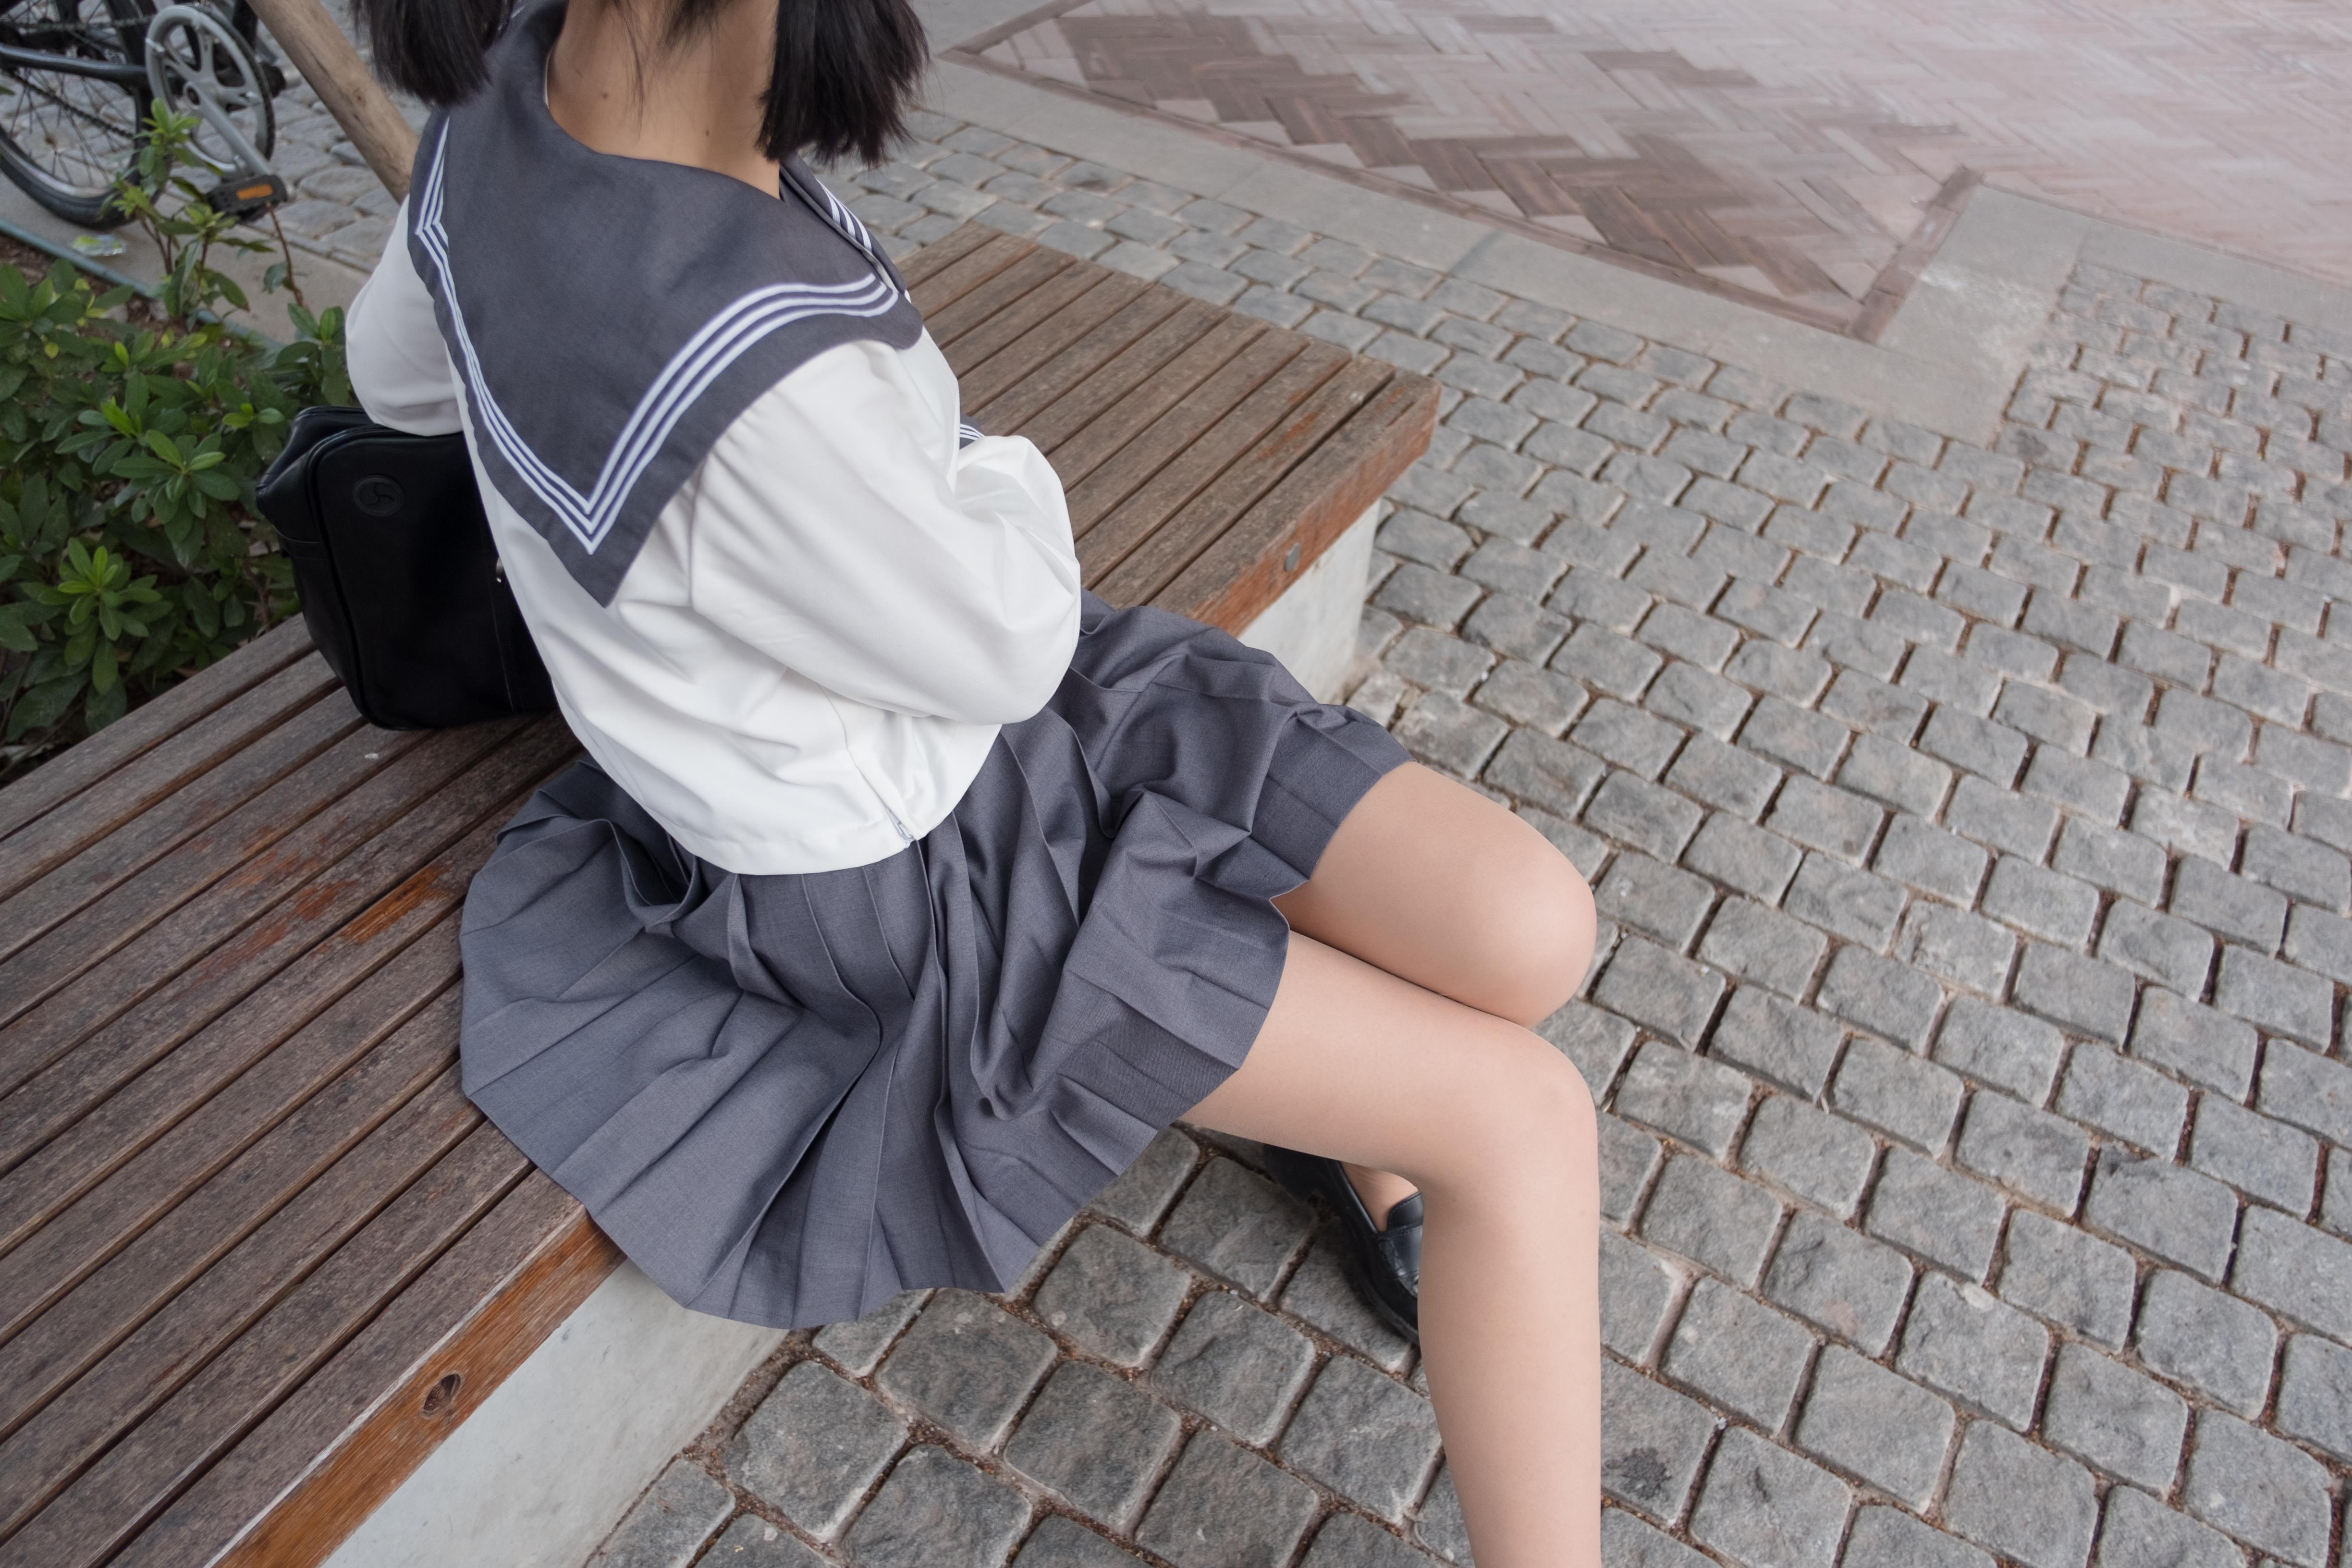 [森萝财团]BETA-009 性感小萝莉 日本高中女生制服加灰色短裙写真集,